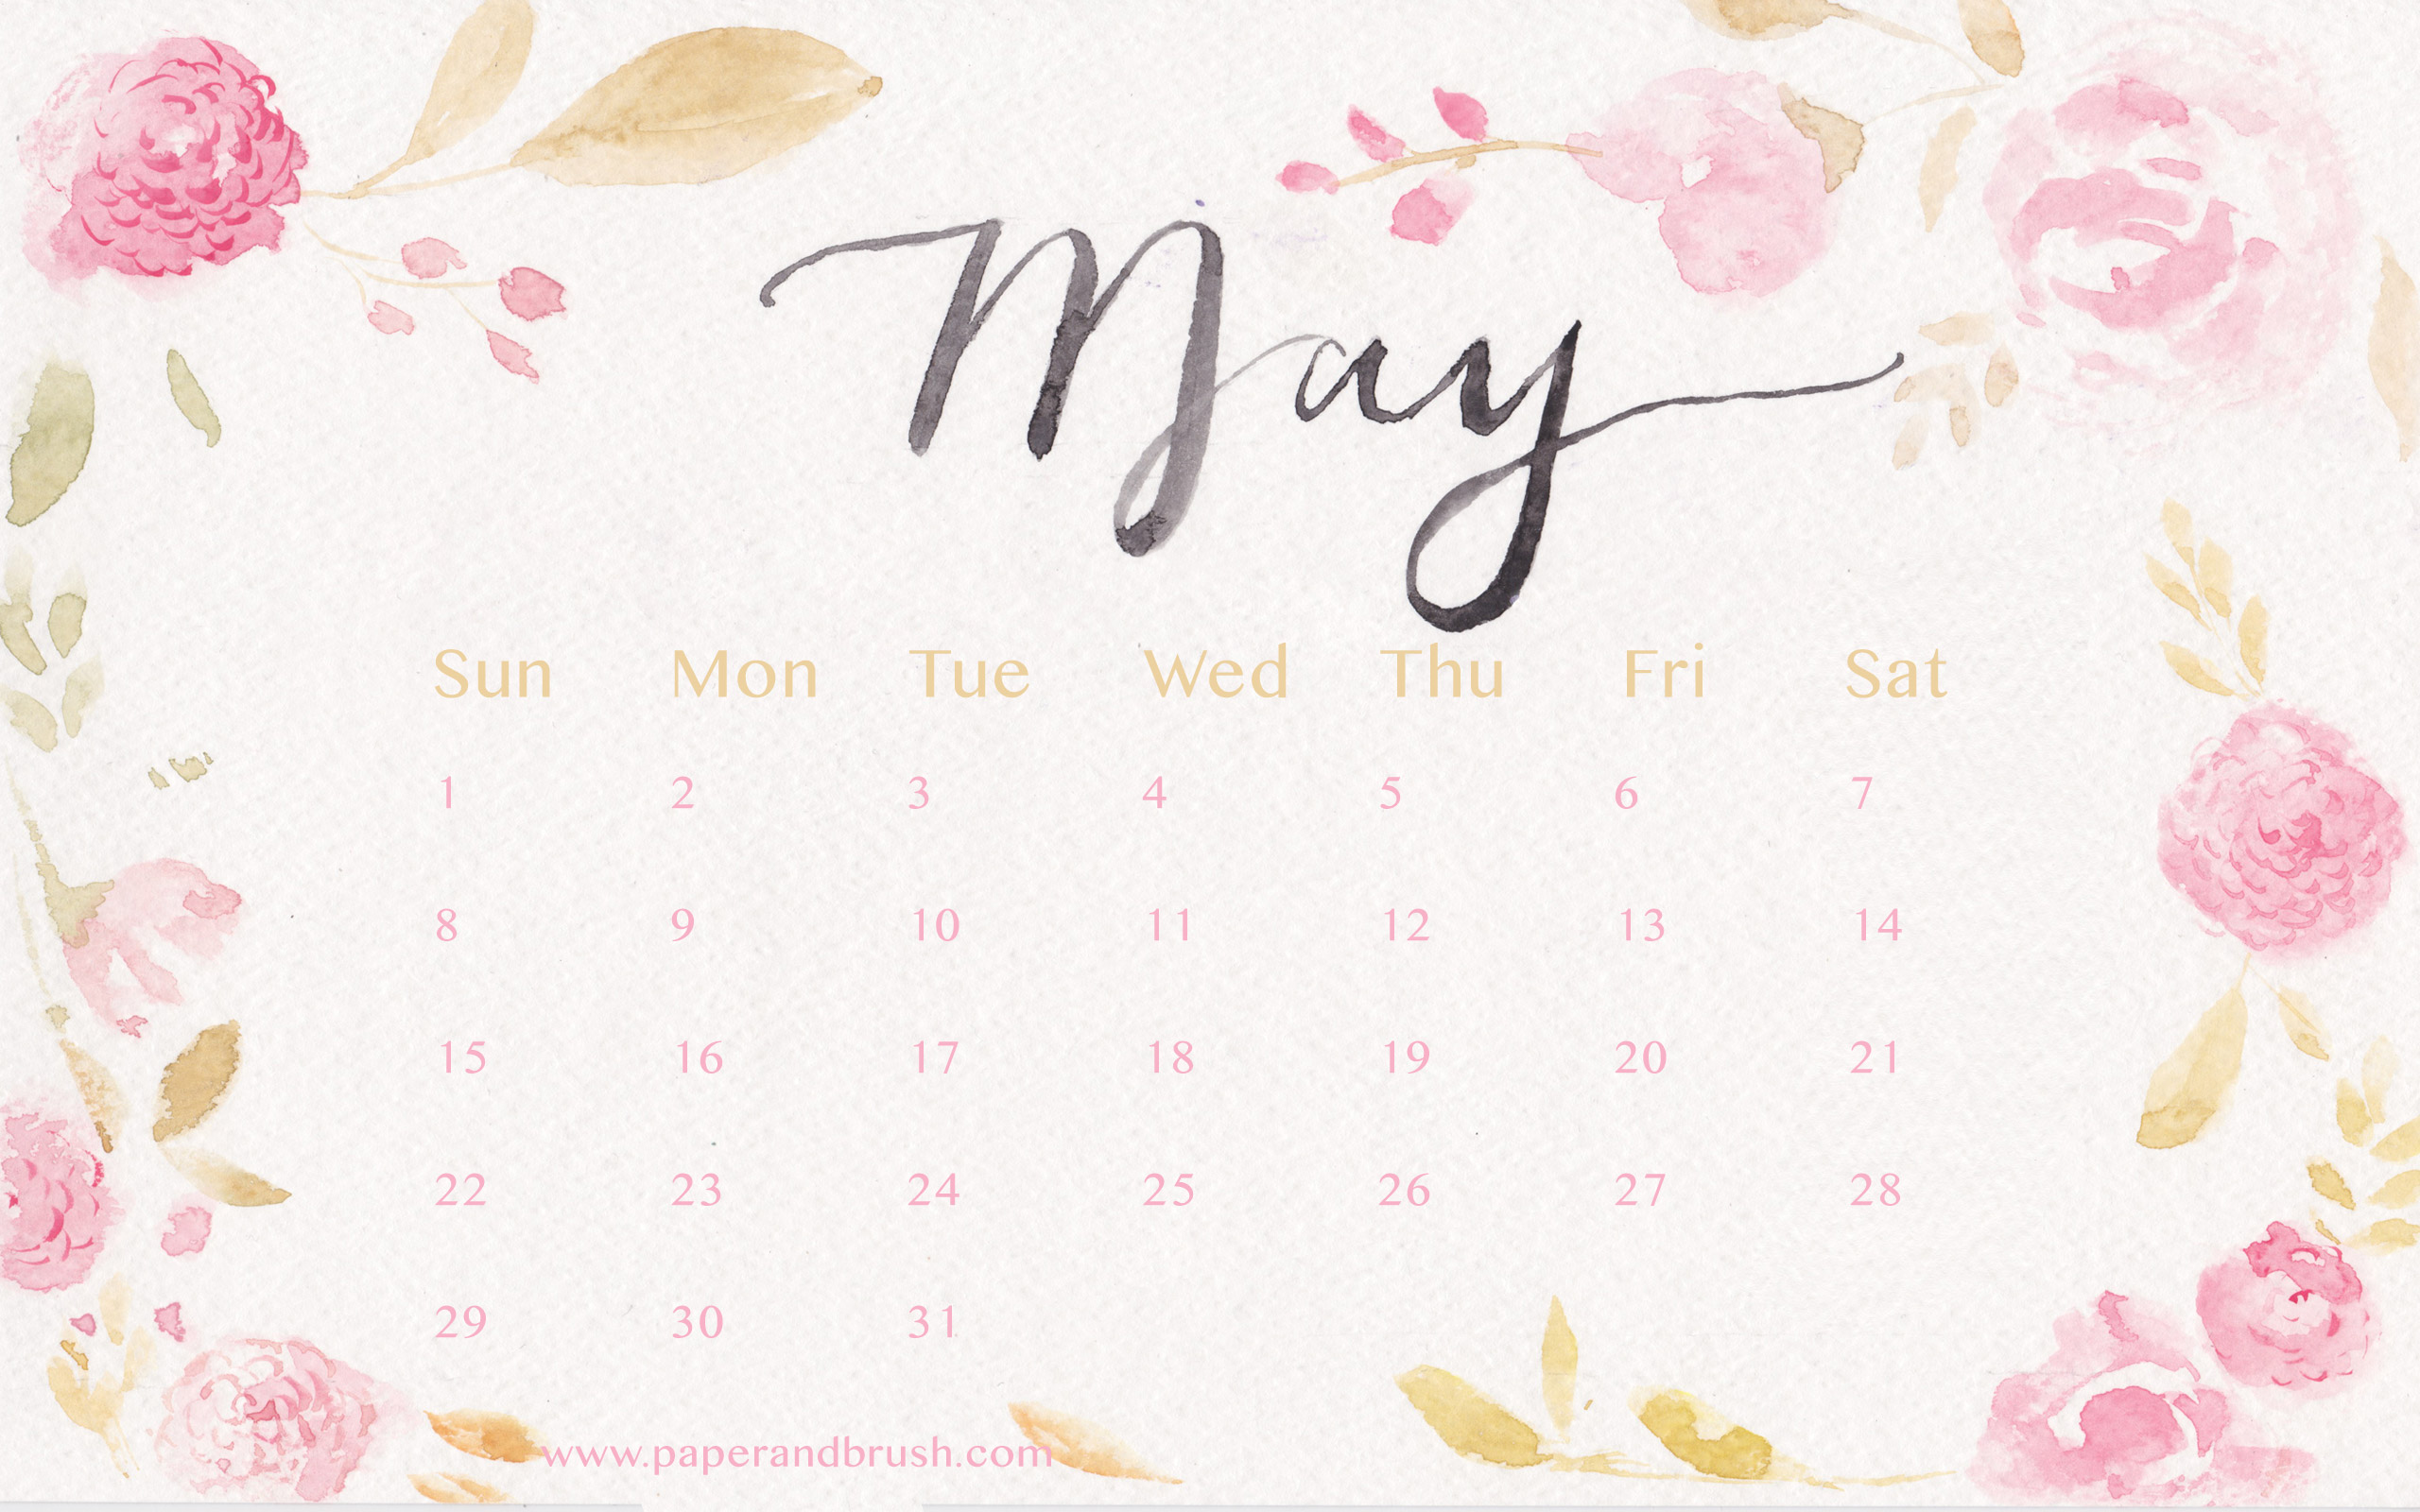 May 2016 Calendar Wallpaper   Paper Brush